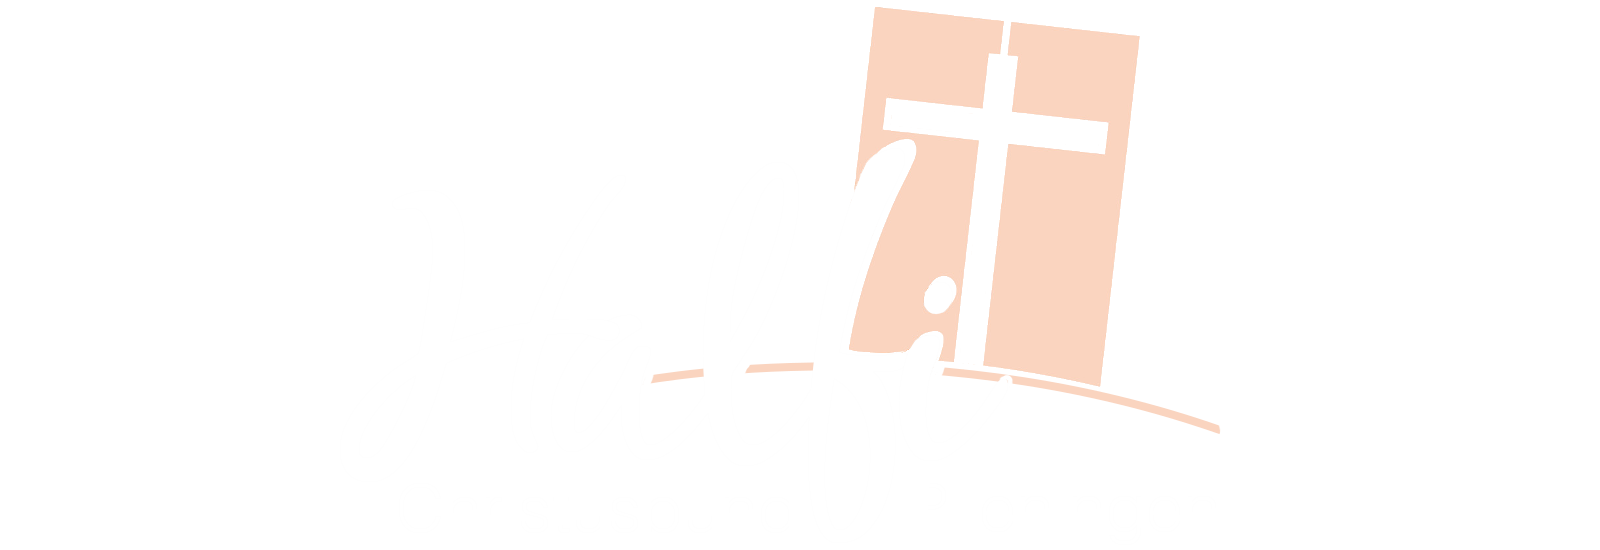 Halfi.info - Christusbund Plieningen